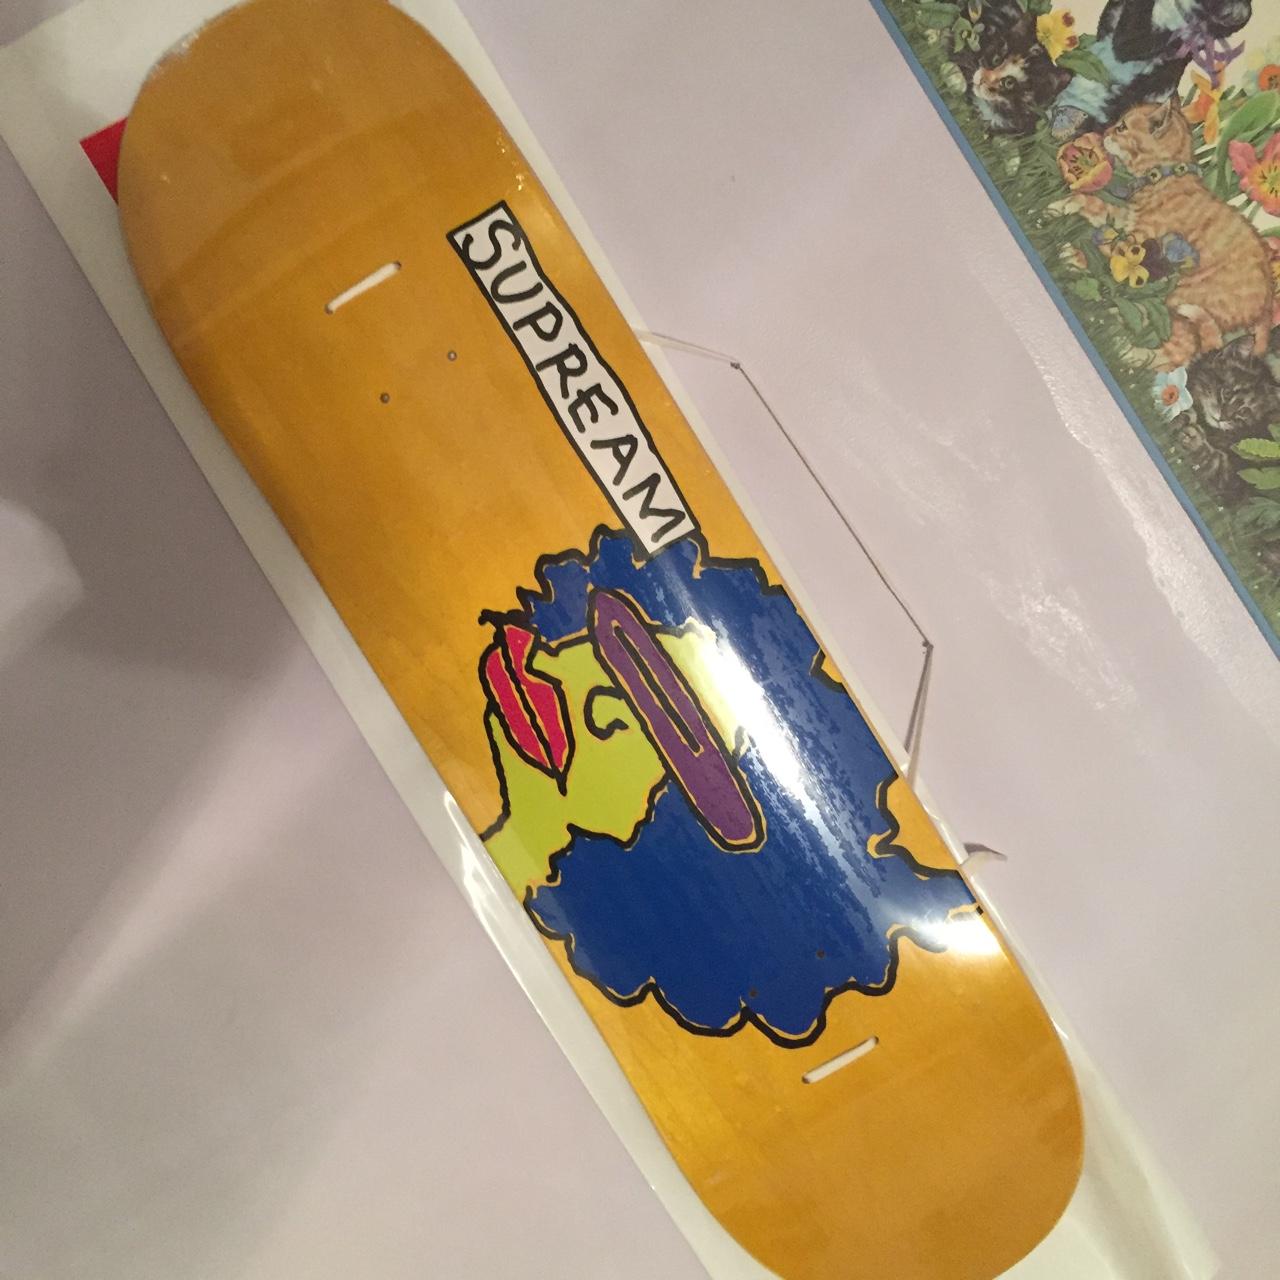 Supreme Skateboard Deck - Gonz Art - Supream Yellow Stain - 8.375